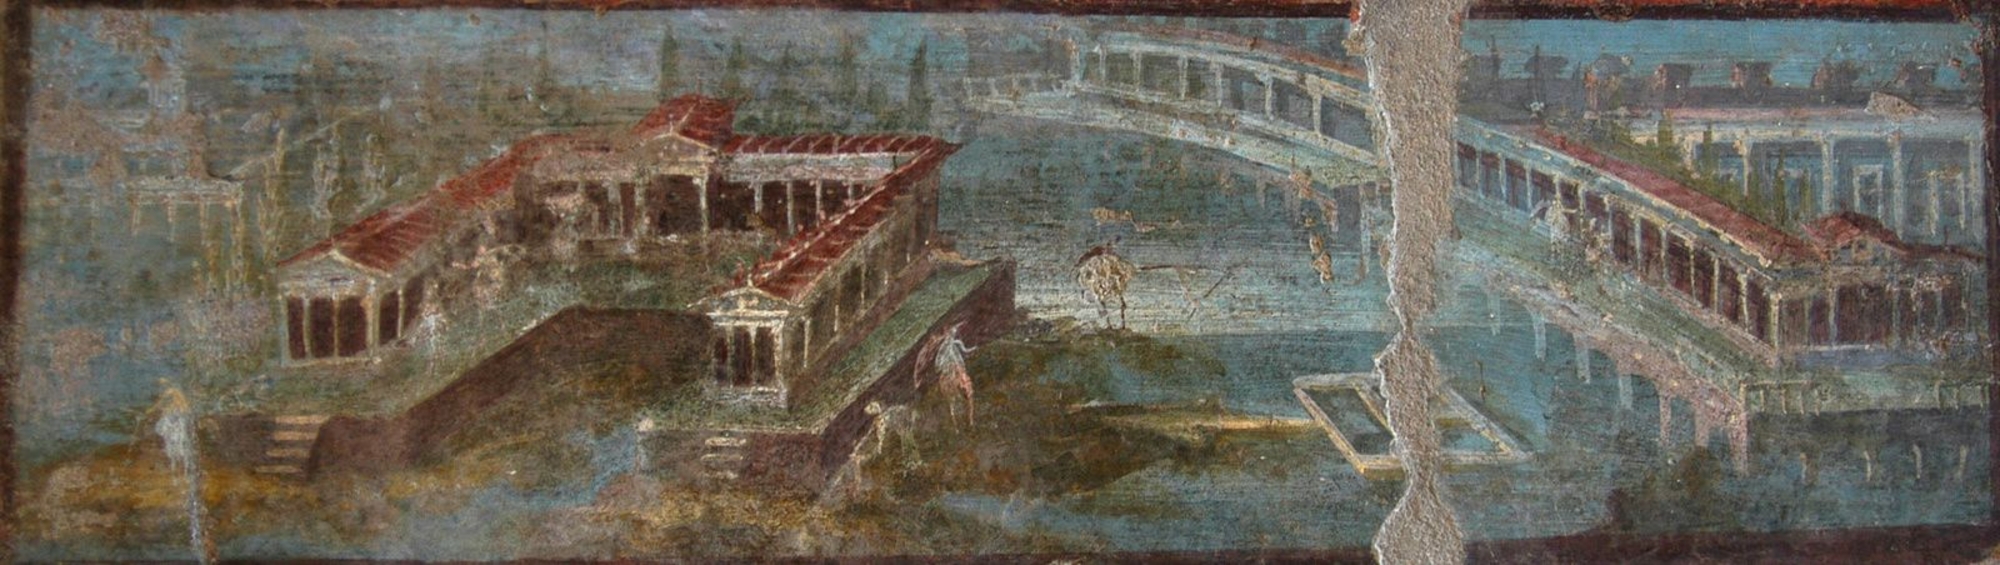 Représentation de villa maritime sur un panneau peint (Ier siècle de notre ère), région de Pompei. Musée de Naples 